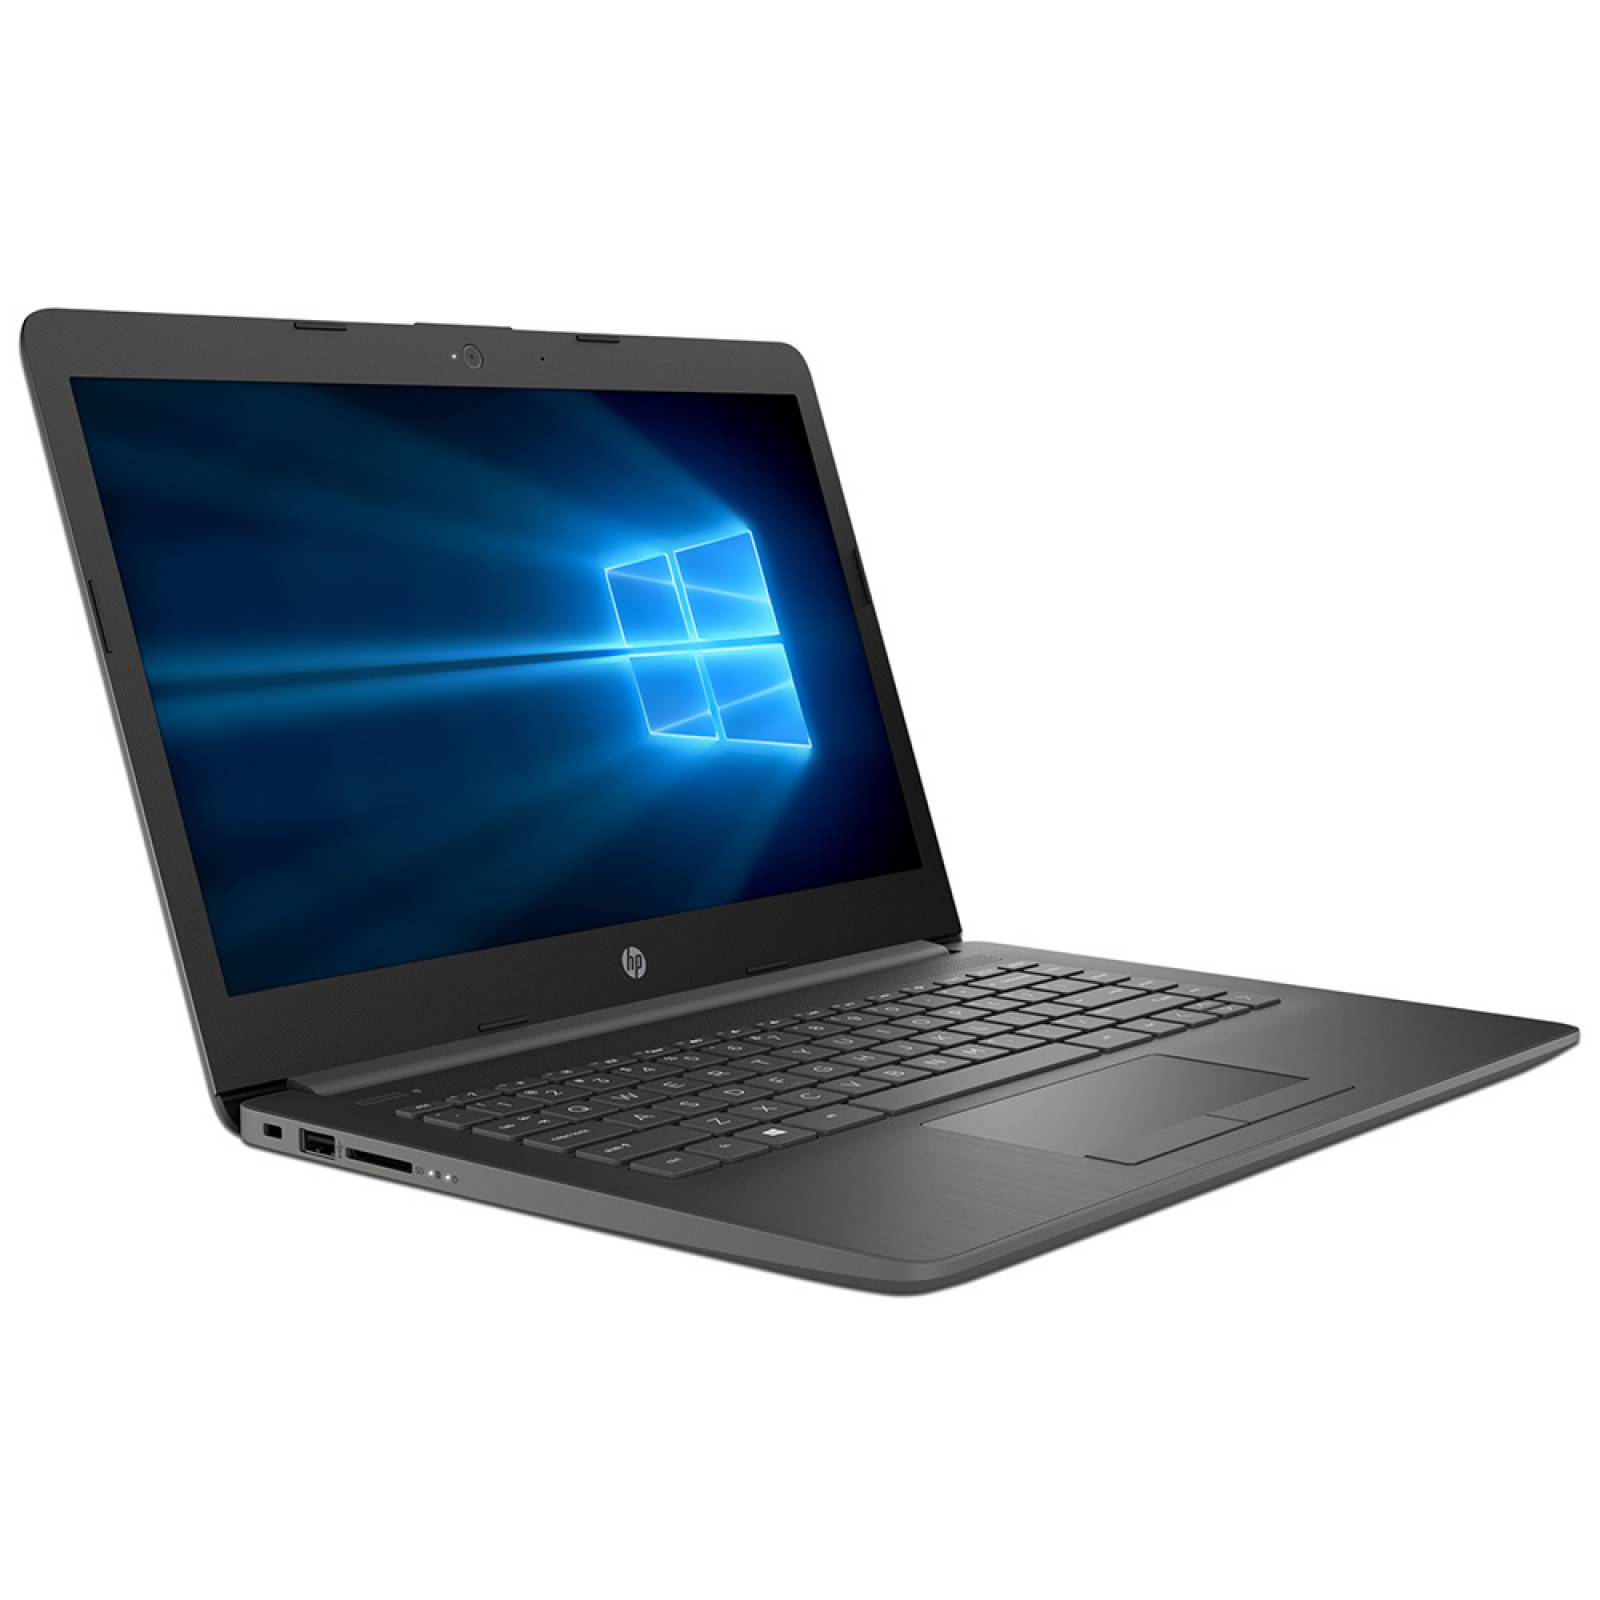 Laptop HP 14-ck1022la Procesador Intel Core i5 8265U Memoria de 4GB DDR4 Disco Duro de 1TB Pantalla de 14 pulgadas LED Video HD Graphics 620 S.O. Windows 10 Home